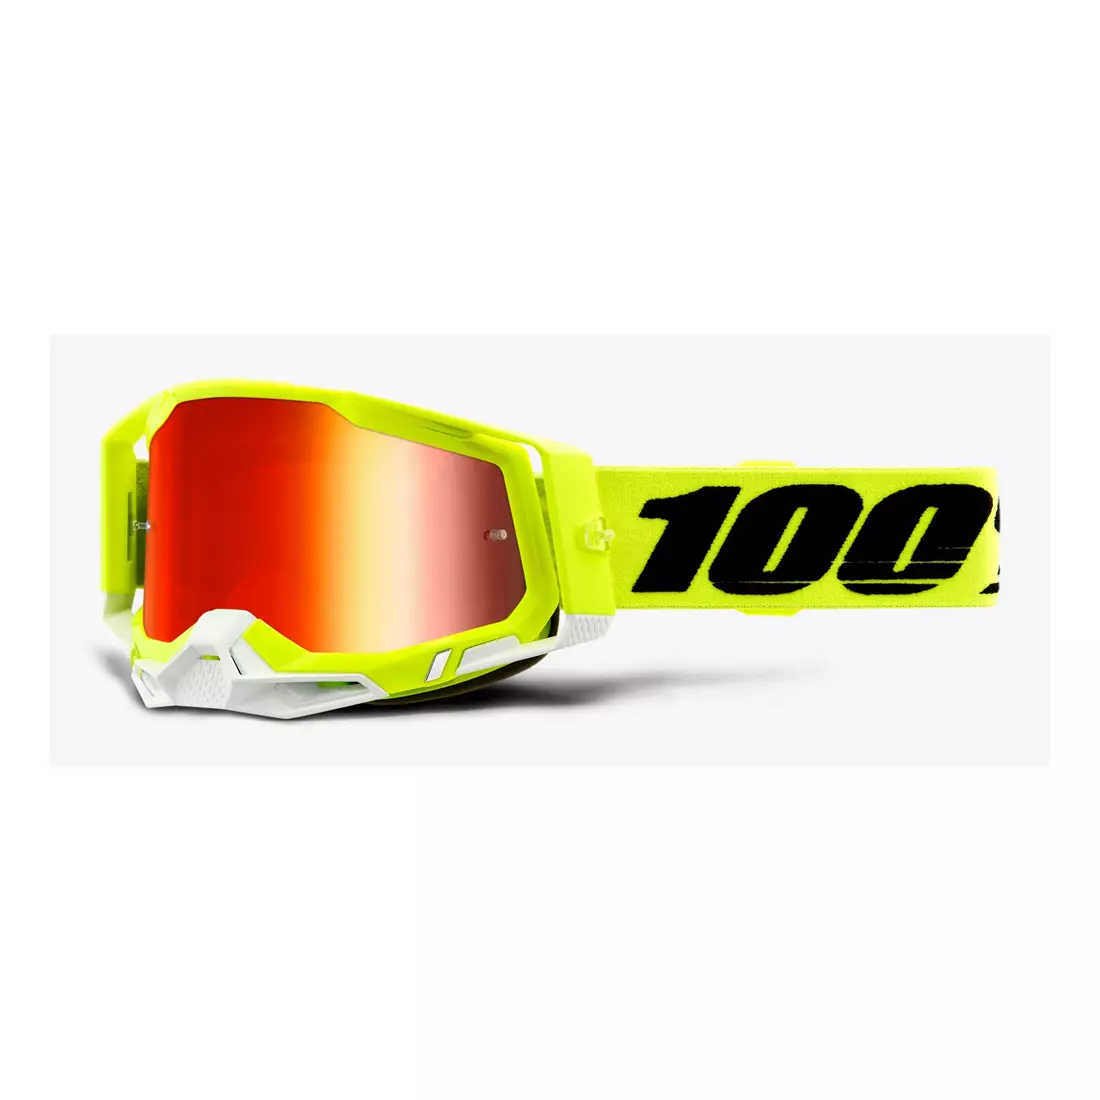 100% Ochelari de protecție pentru ciclism RACECRAFT 2 (lentilă roșie oglindită anti-ceață, LT 38%+/-5% + lentilă transparentă anti-ceață, LT 88%-92% + 10 capace) attack yellow STO-50121-251-04